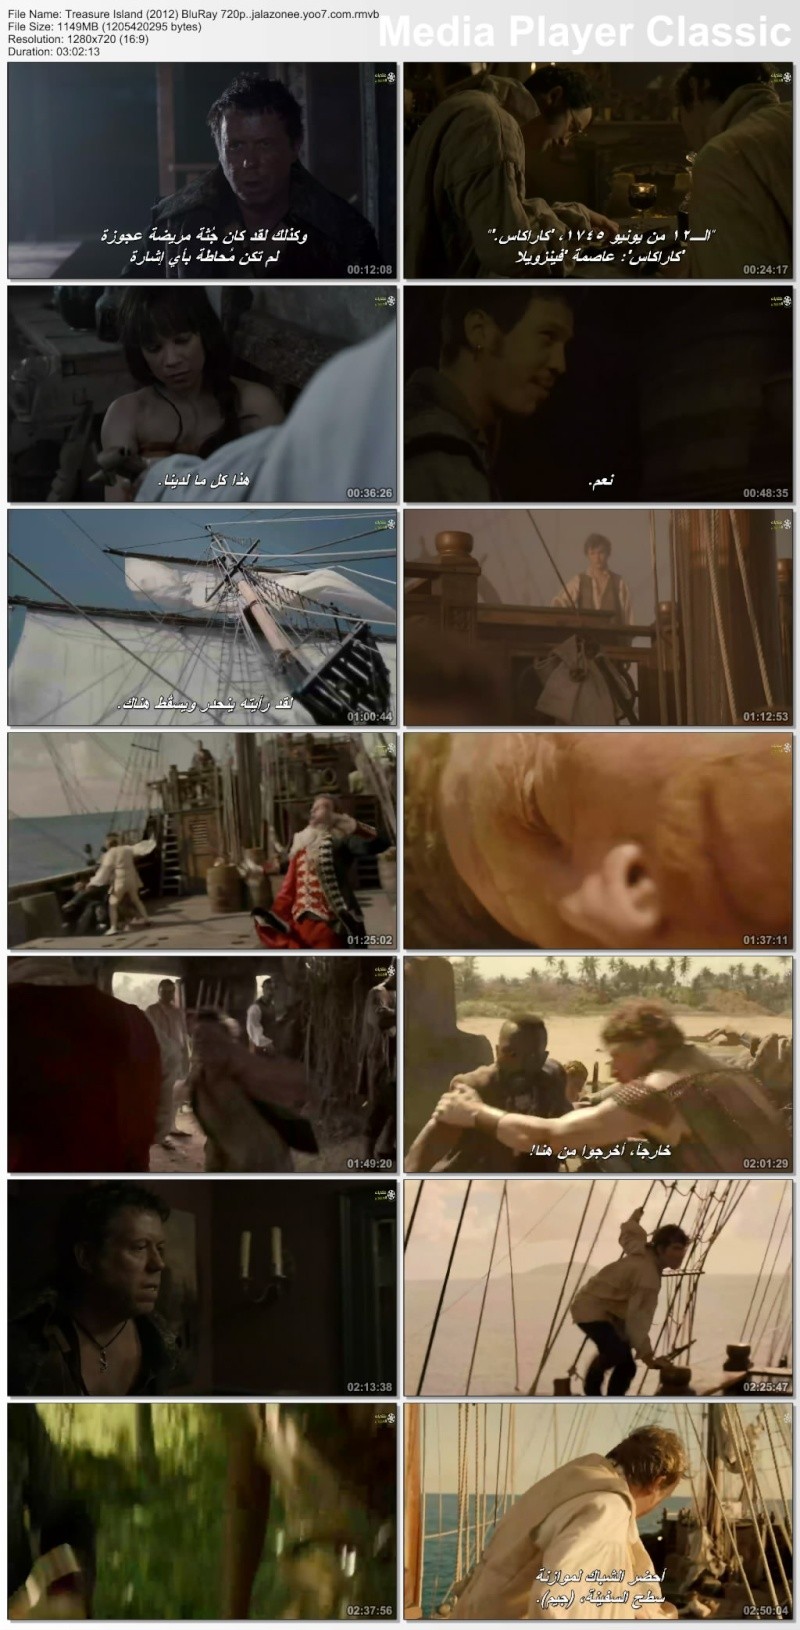 حصريا فيلك الاكشن والمغامرة والقراصنة الرهيب جدا Treasure Island (2012) BluRay 720p مترجم على اكثر  من سيرفير باعلى جودة بلوري Treasu10